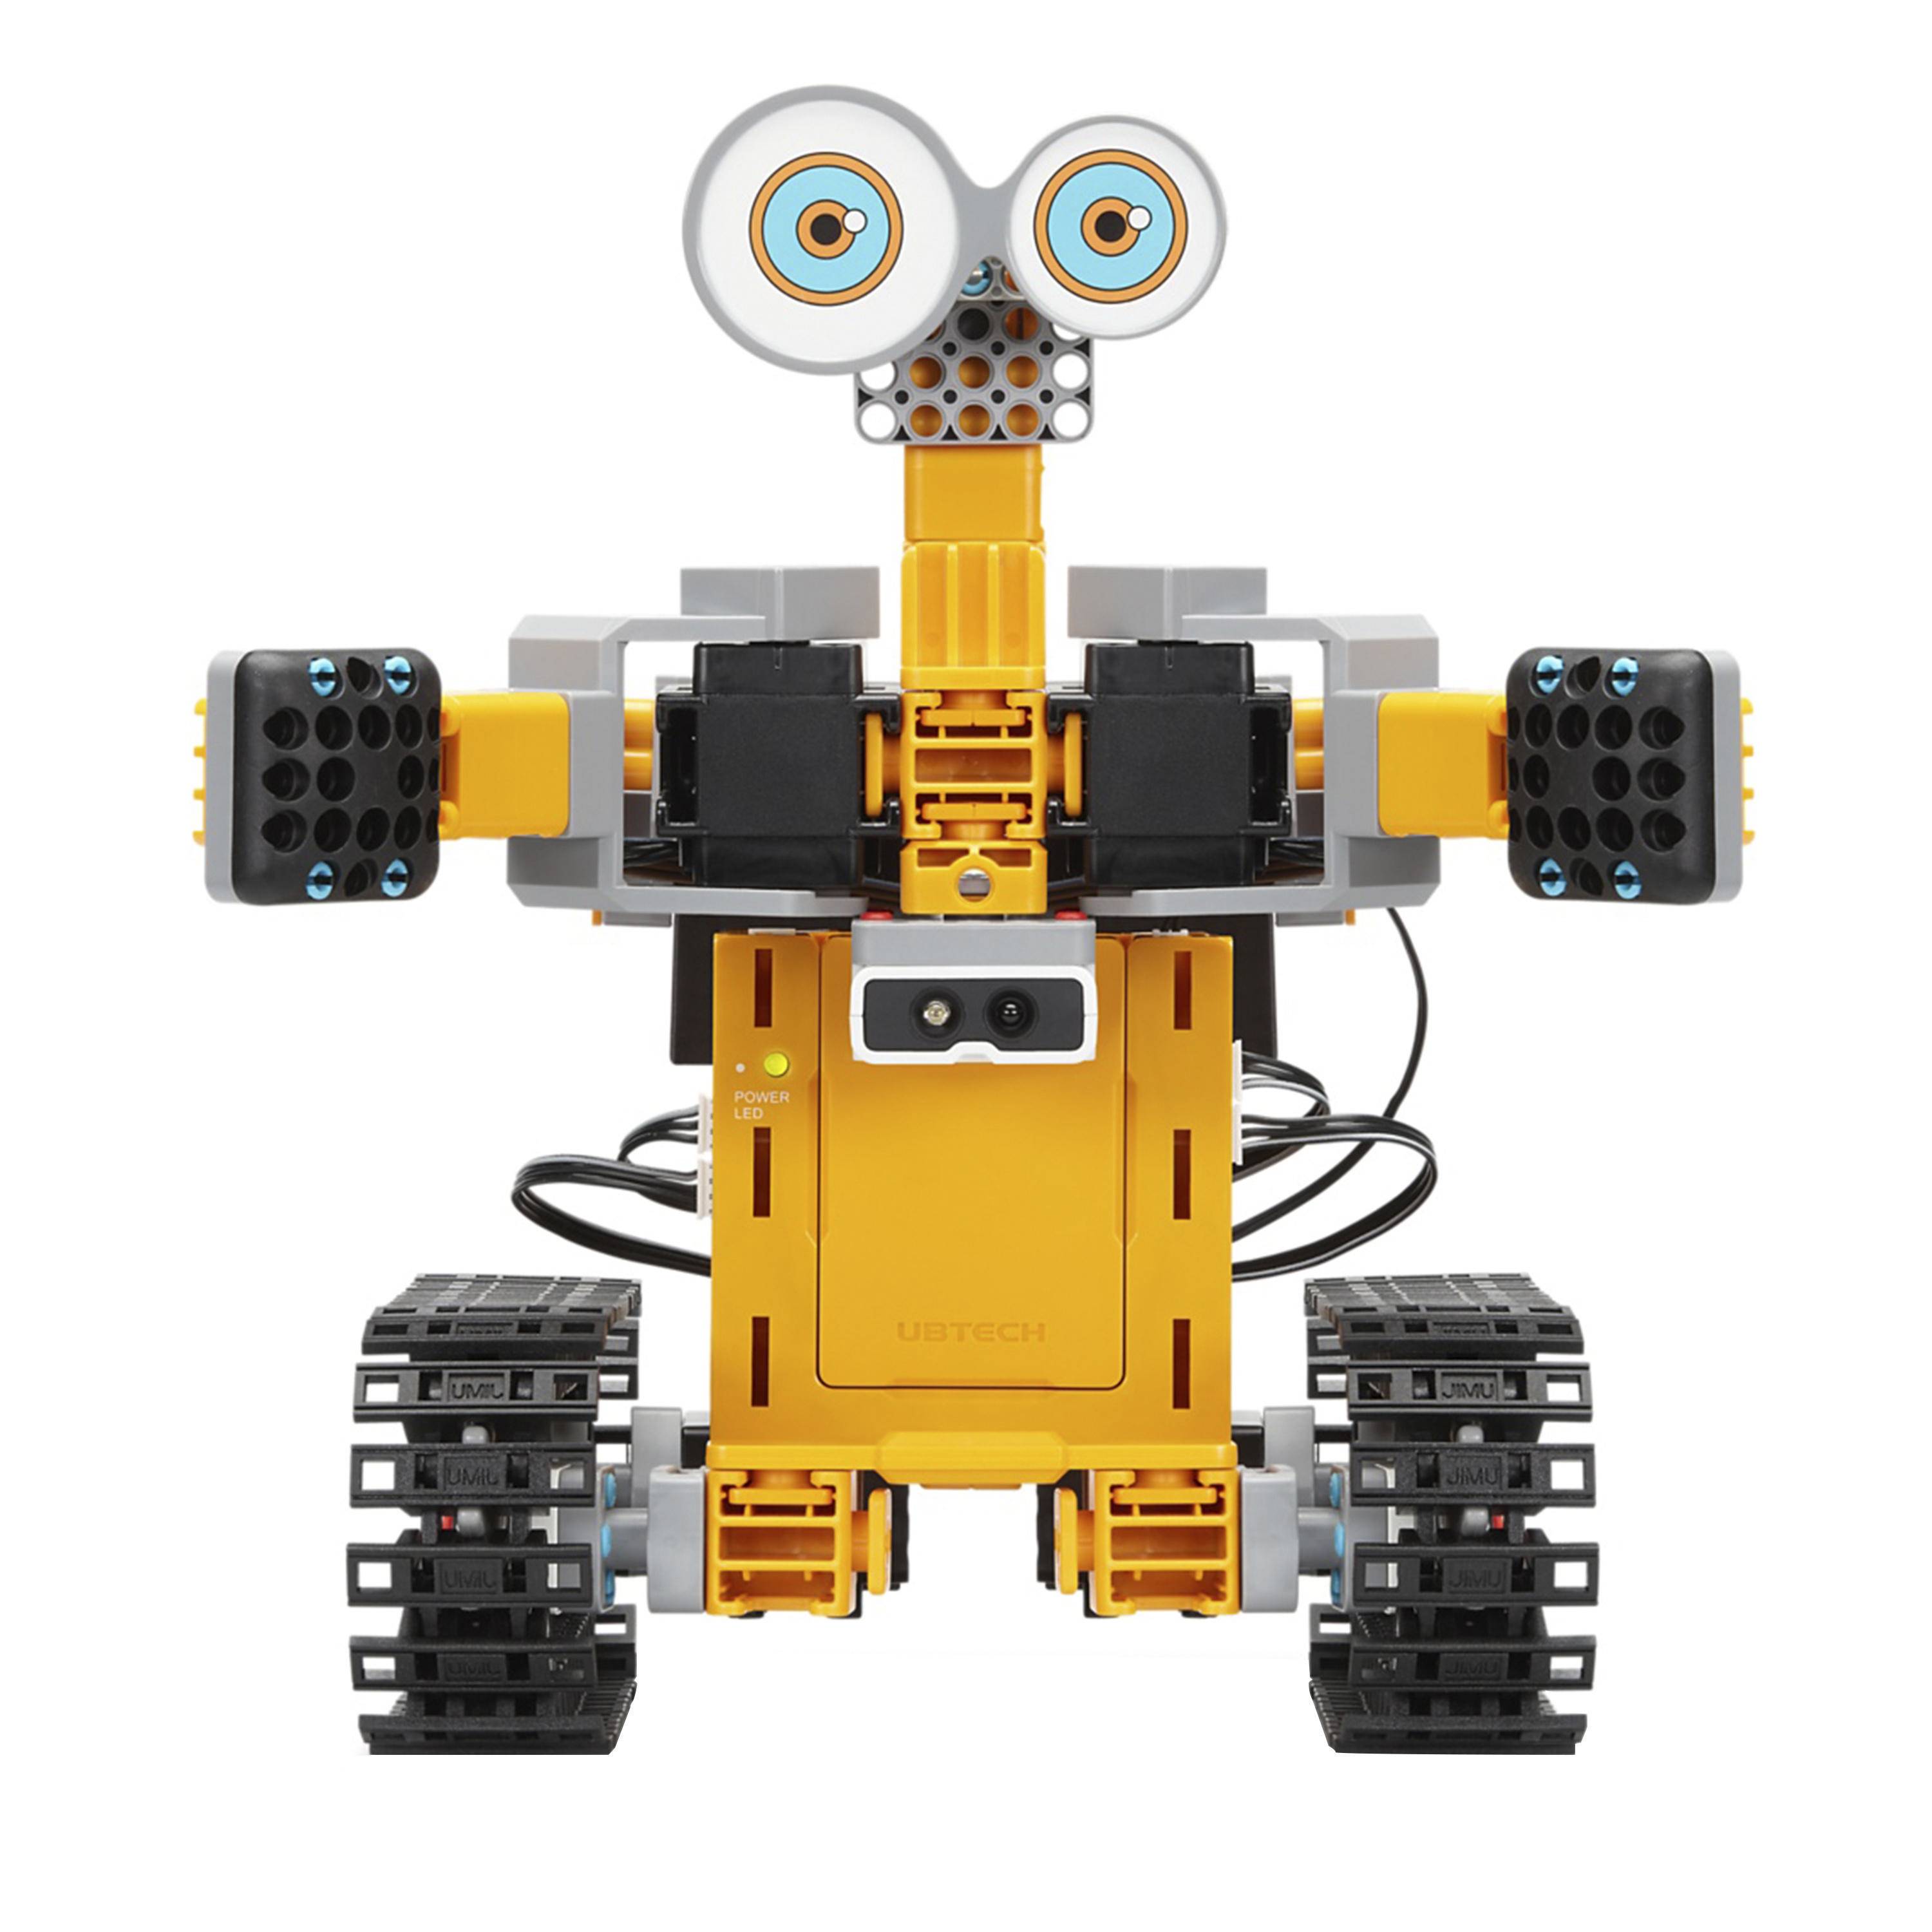 Робототехника стоимость. Робот конструктор Jimu. UBTECH Jimu Robot. Роботы конструкторы UBTECH. Программируемый конструктор Jimu.